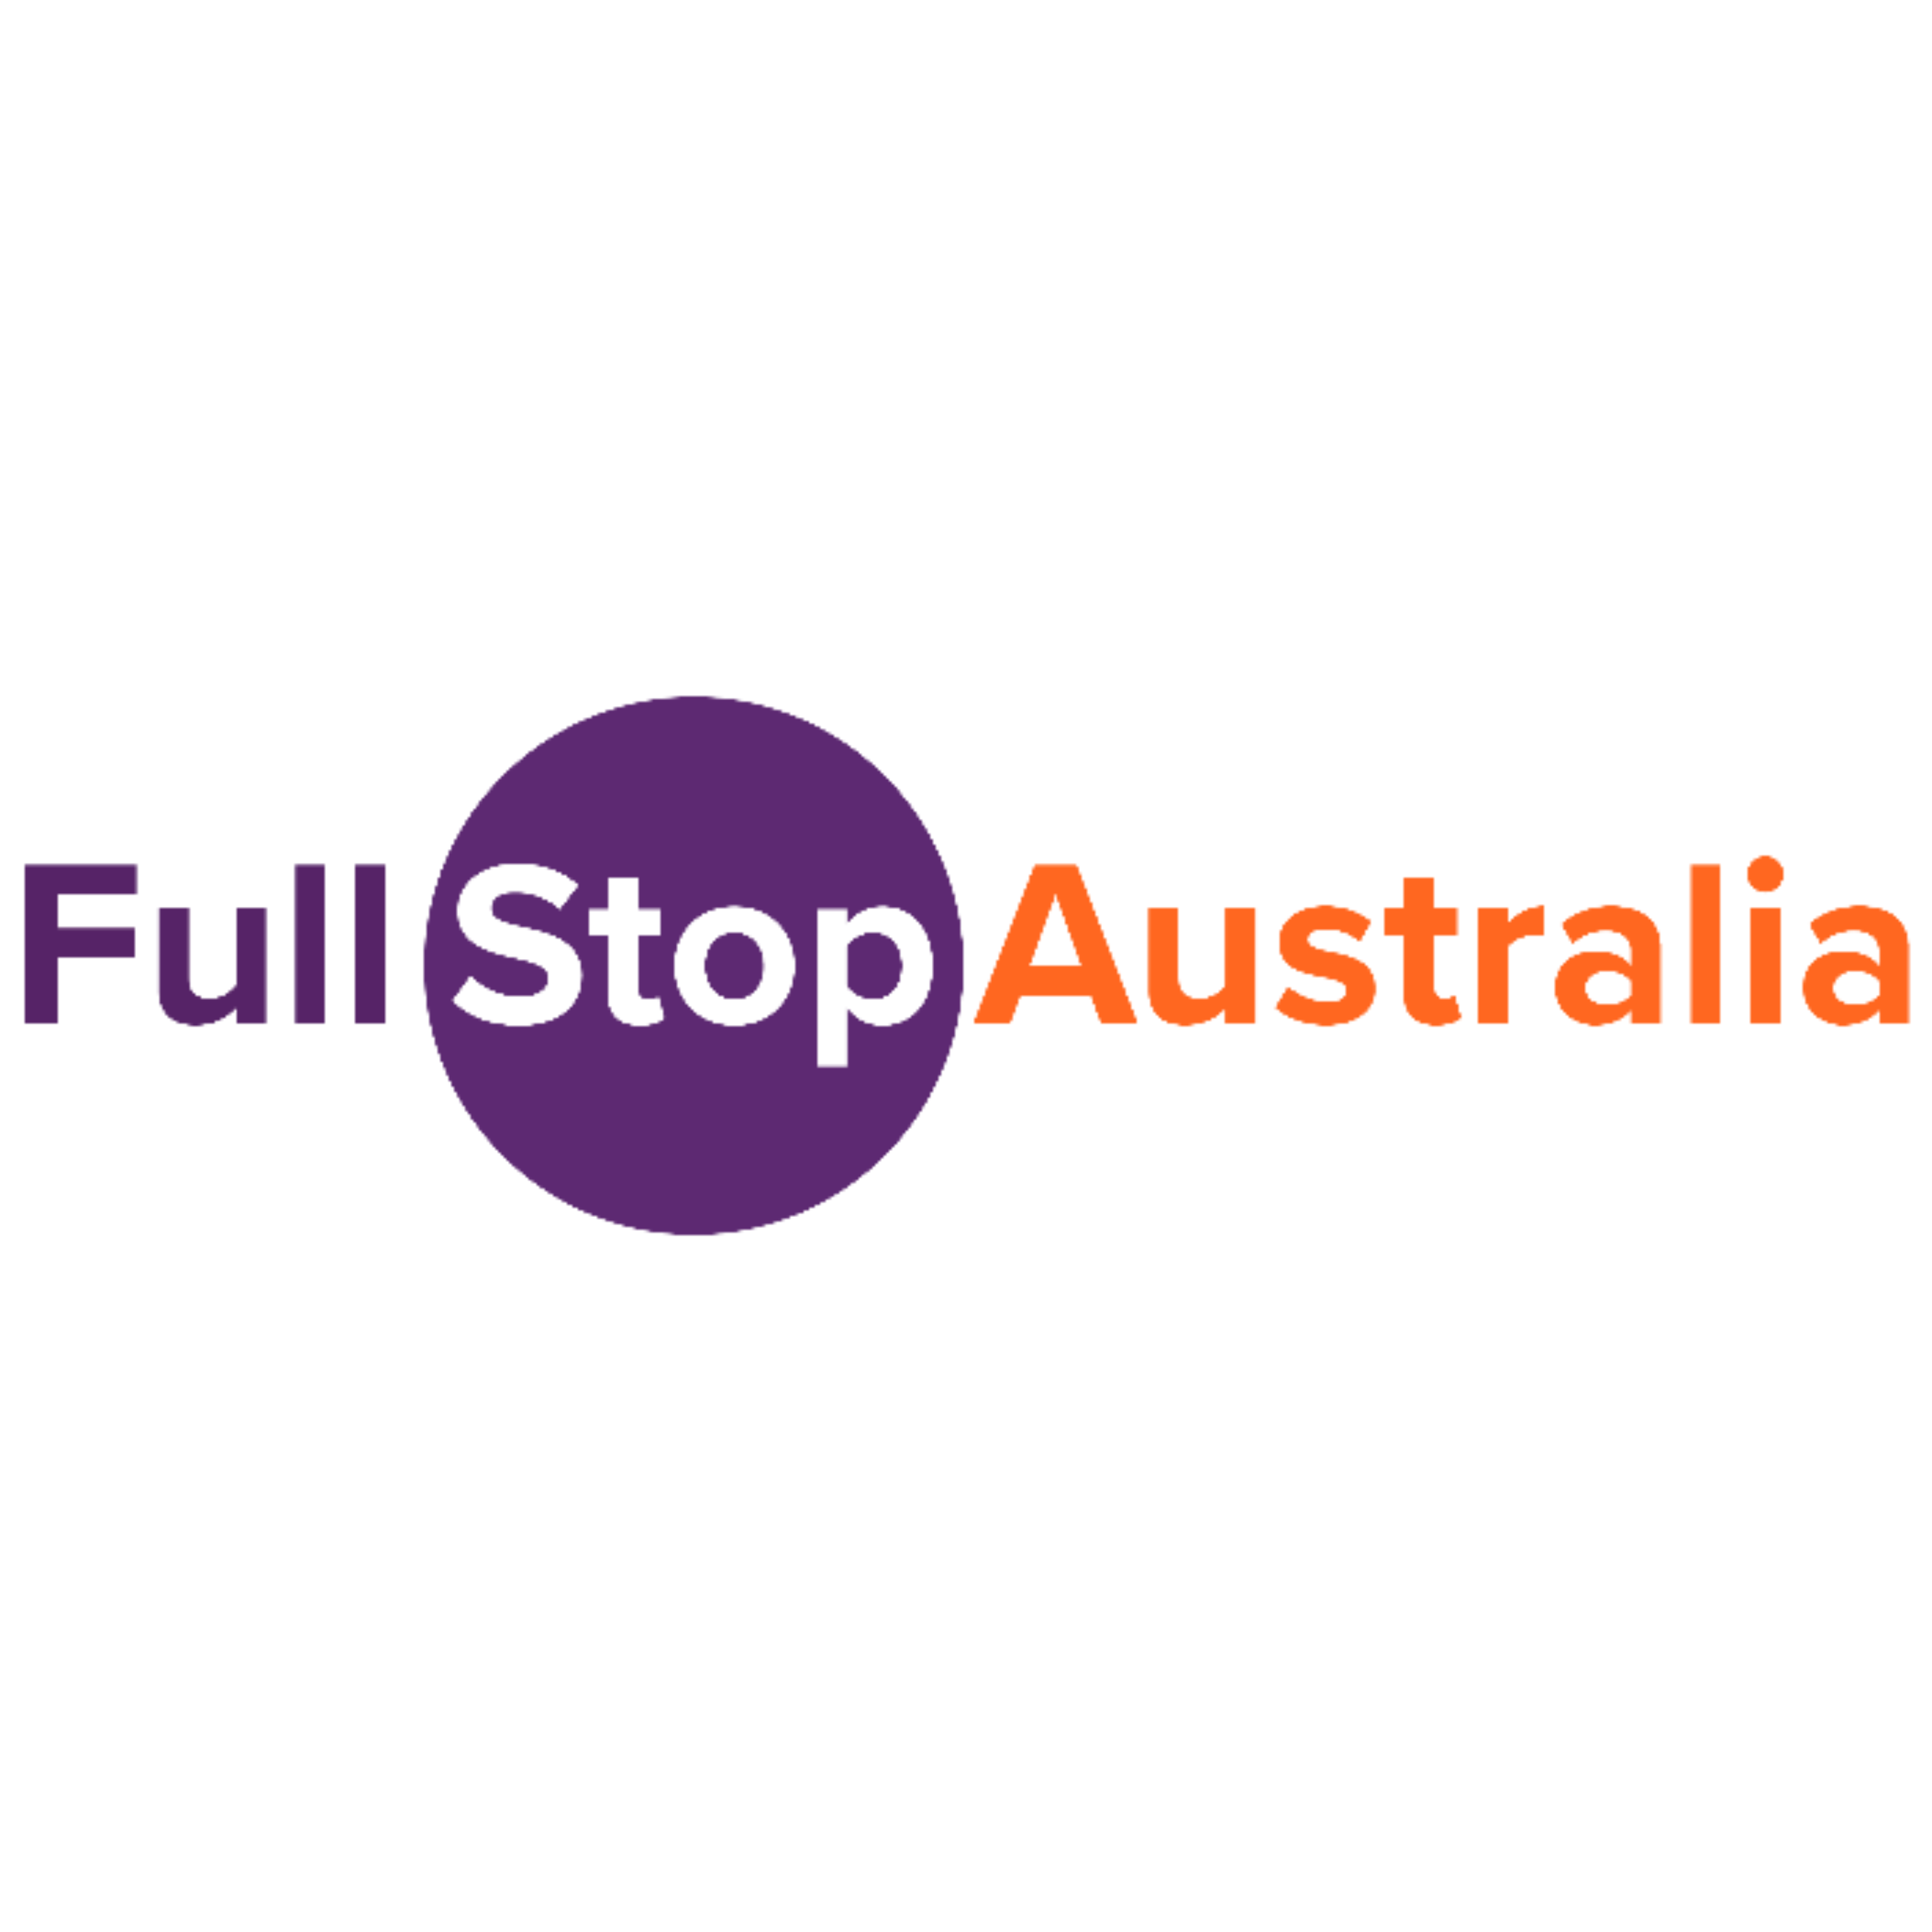 Full Stop Australia